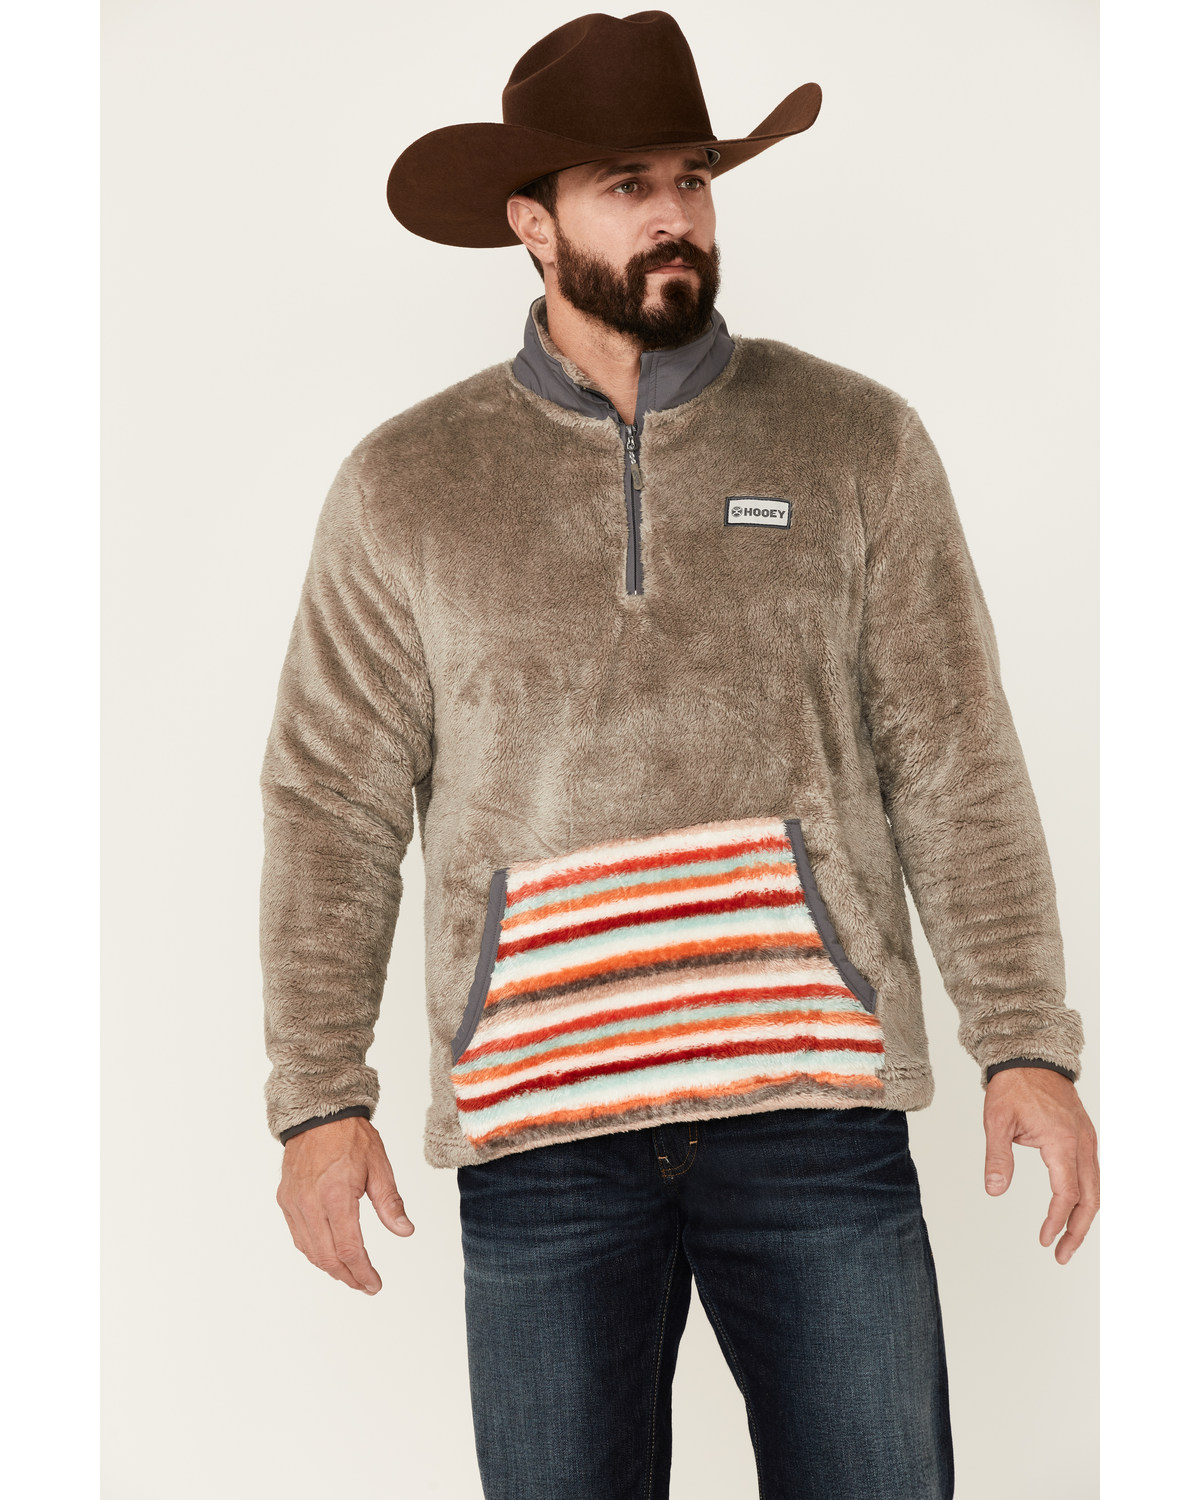 Hooey Men's Stripe Pocket 1/4 Zip Fleece Pullover